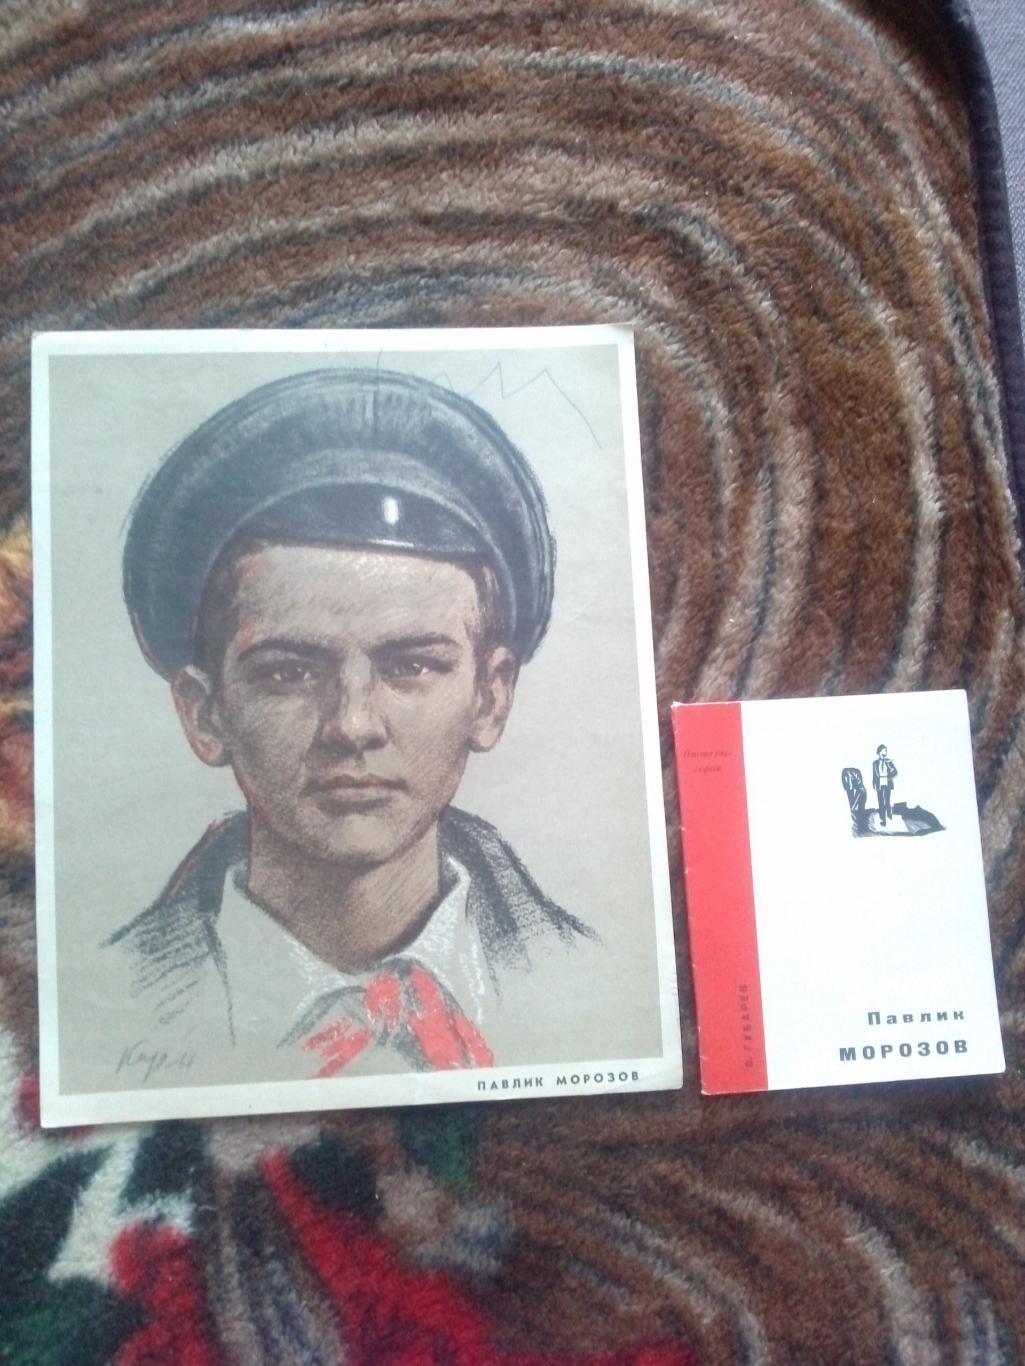 Пионеры-герои (Плакат + брошюра) 1967 г. Павлик Морозов (Пионер , агитация)